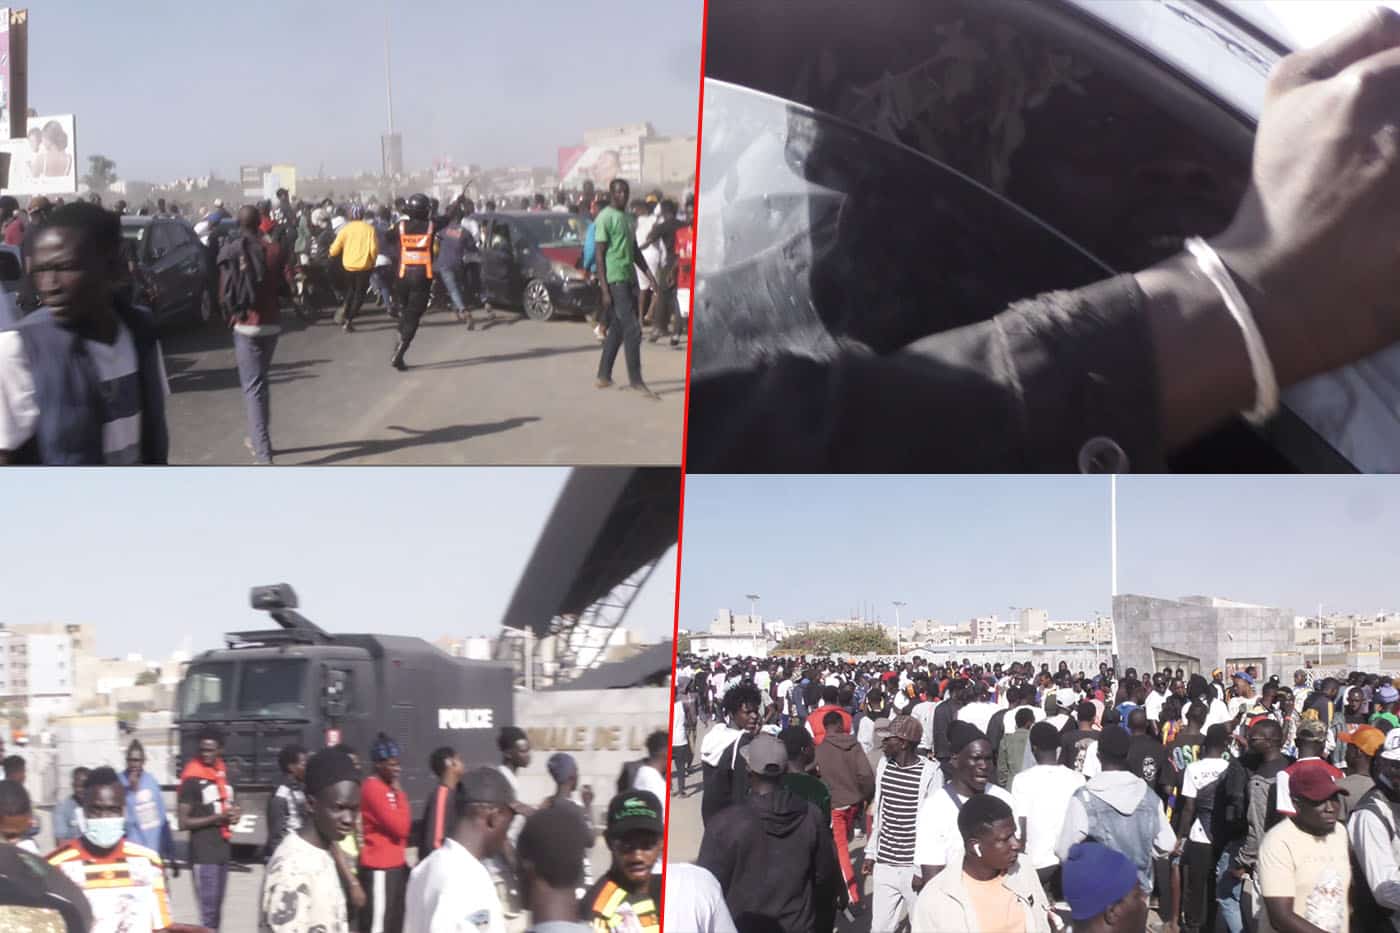 Ça chauffe, Bataille rangée entre supporters à l'arrivée de Zarco à l'arène Nationale (Vidéo)